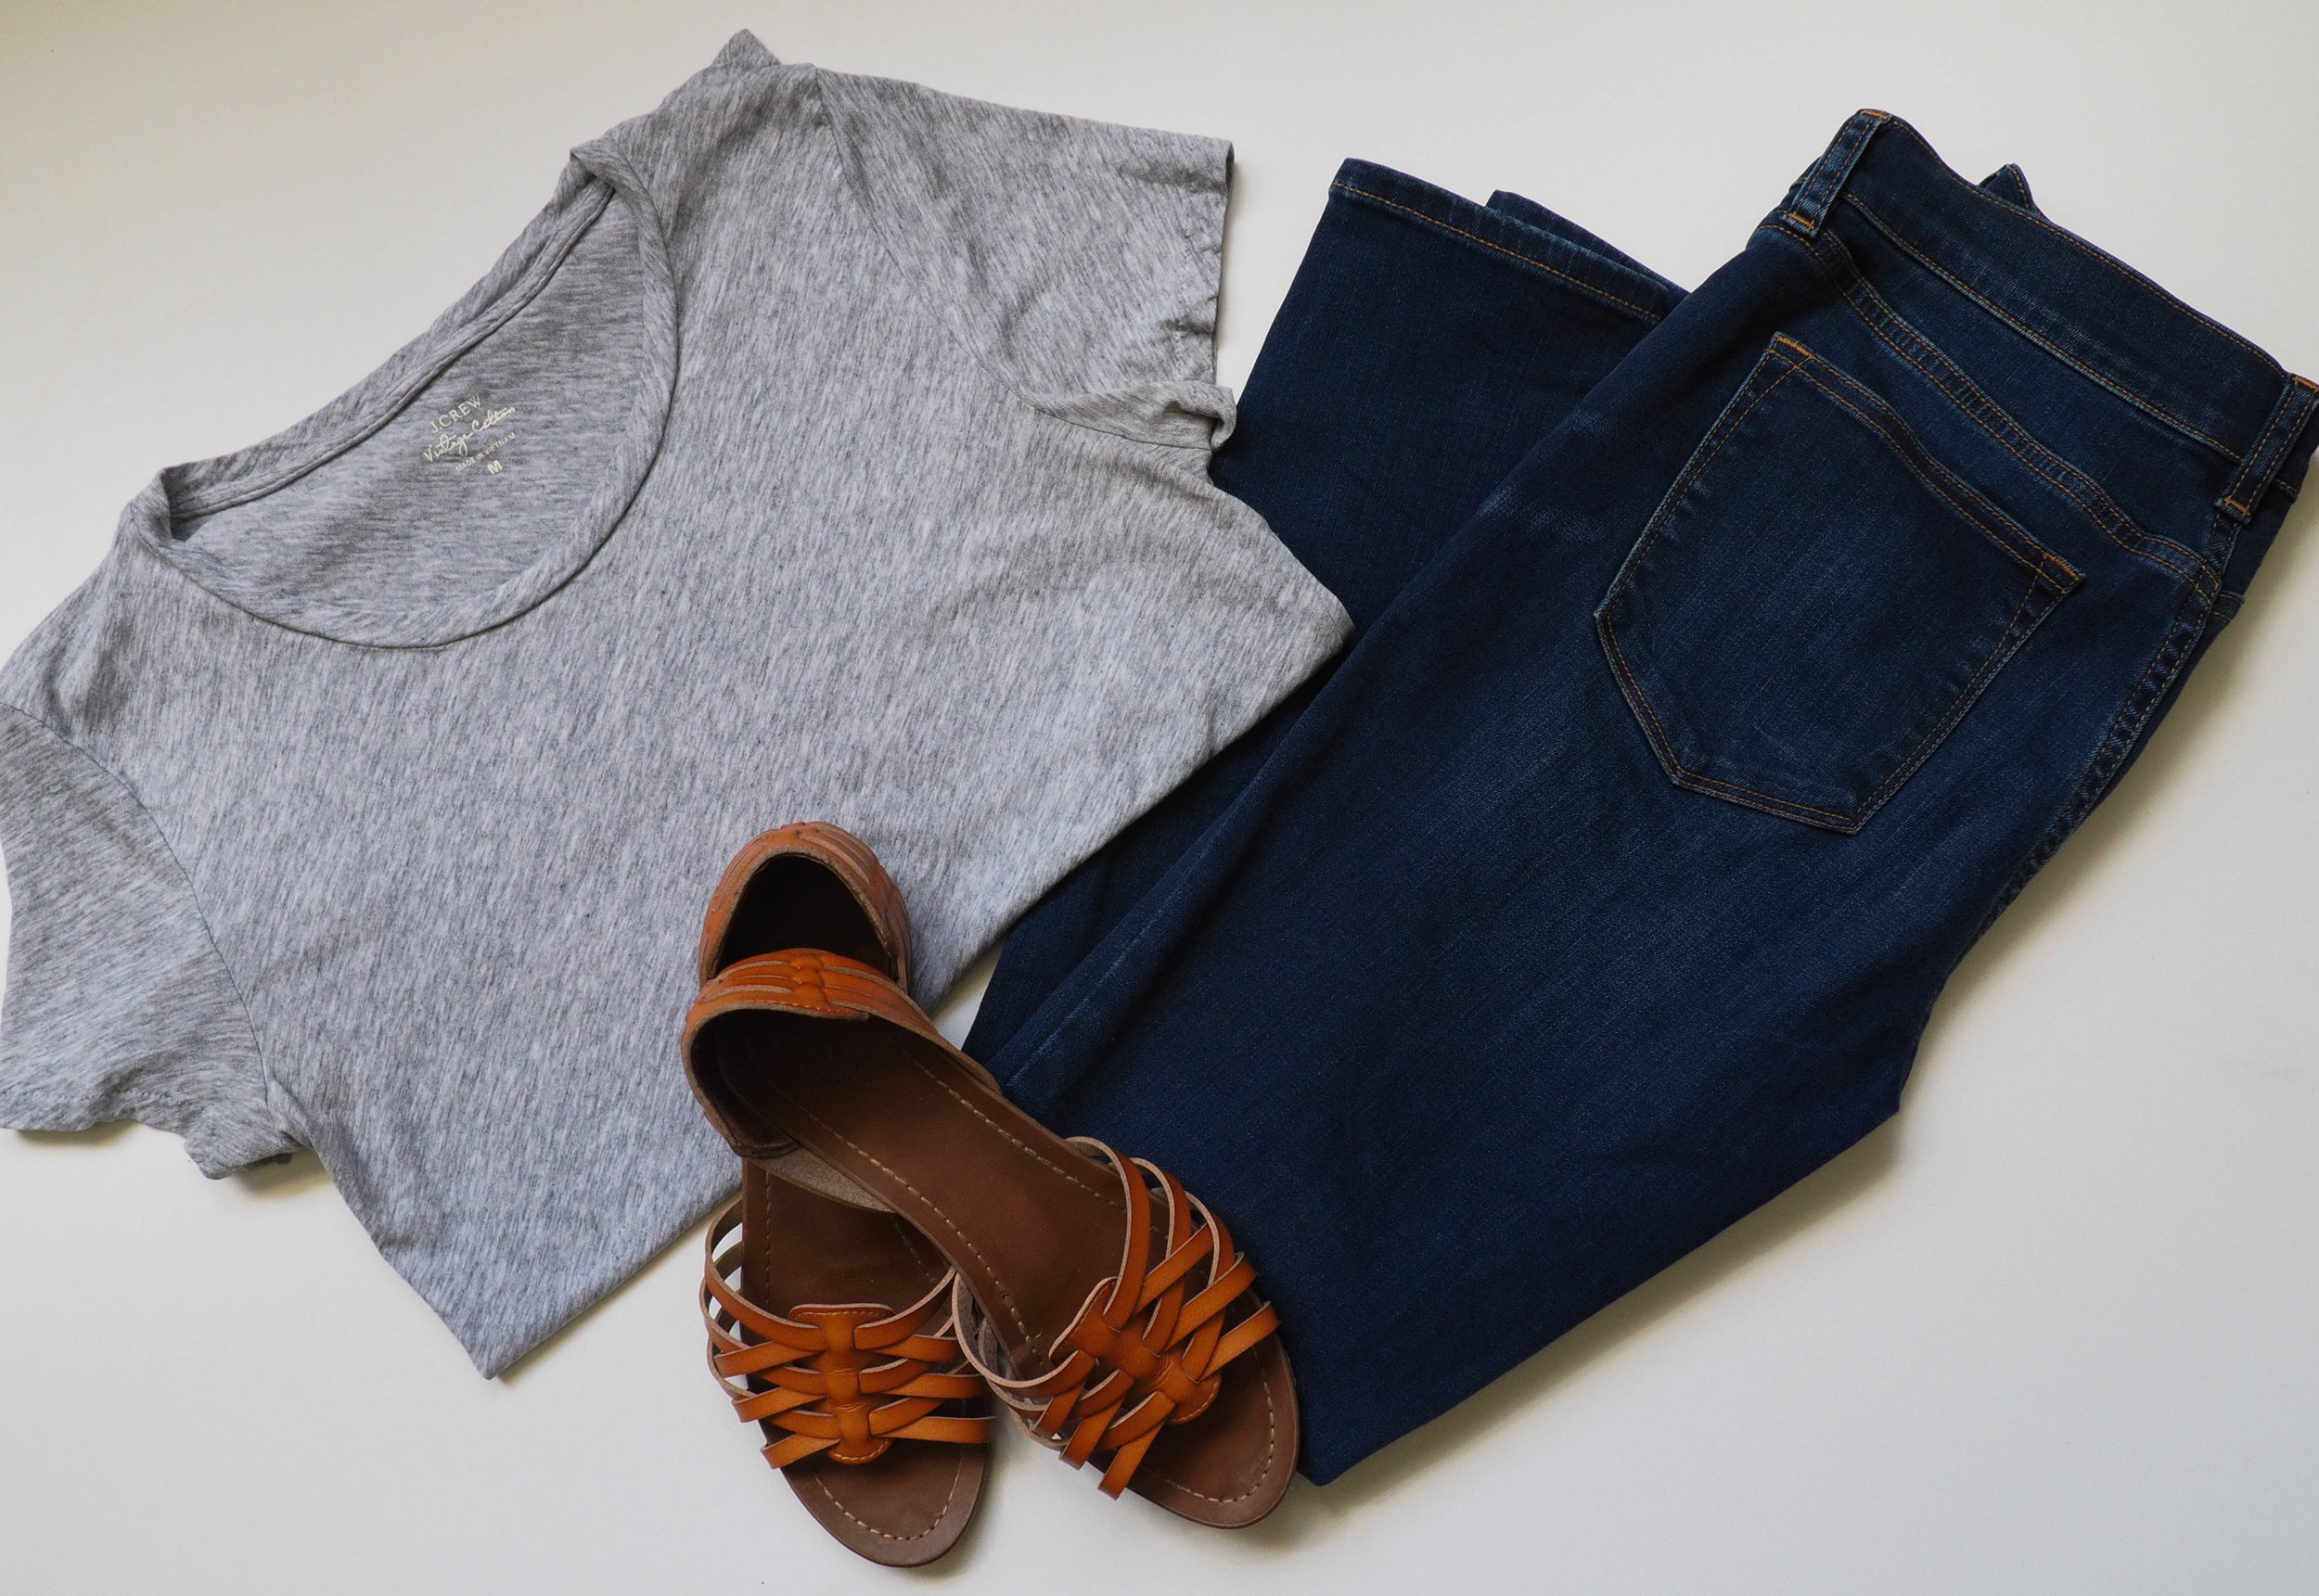   Grey Tissue T Shirt  |  Dark Wash Jeans  |  Brown Sandals  